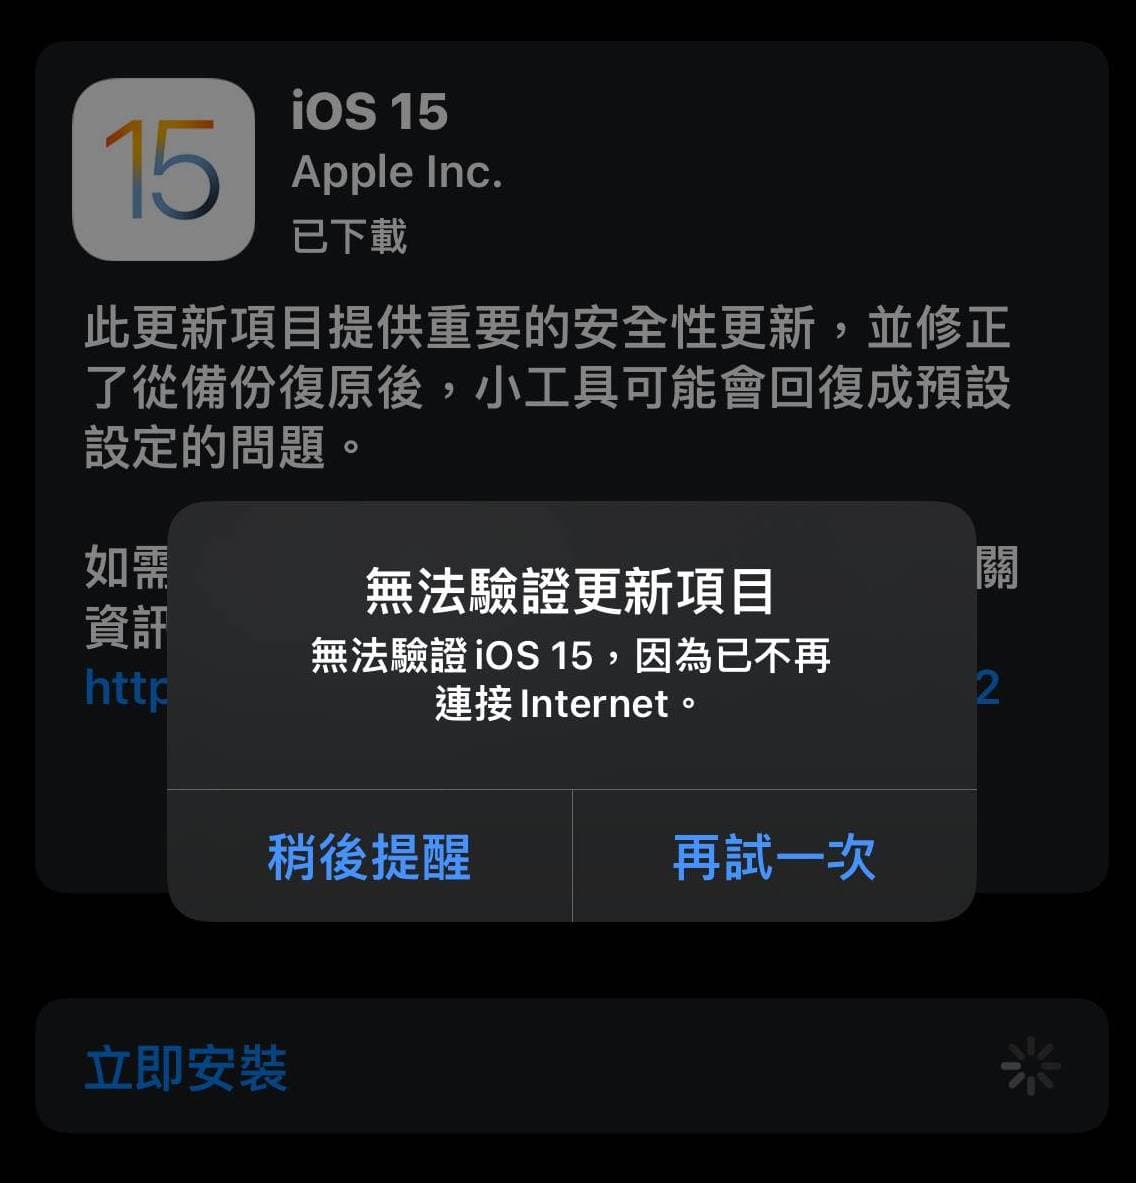 蘋果關閉iPhone 13 系列iOS 15 正式版認證(19A346) 造成無法更新2